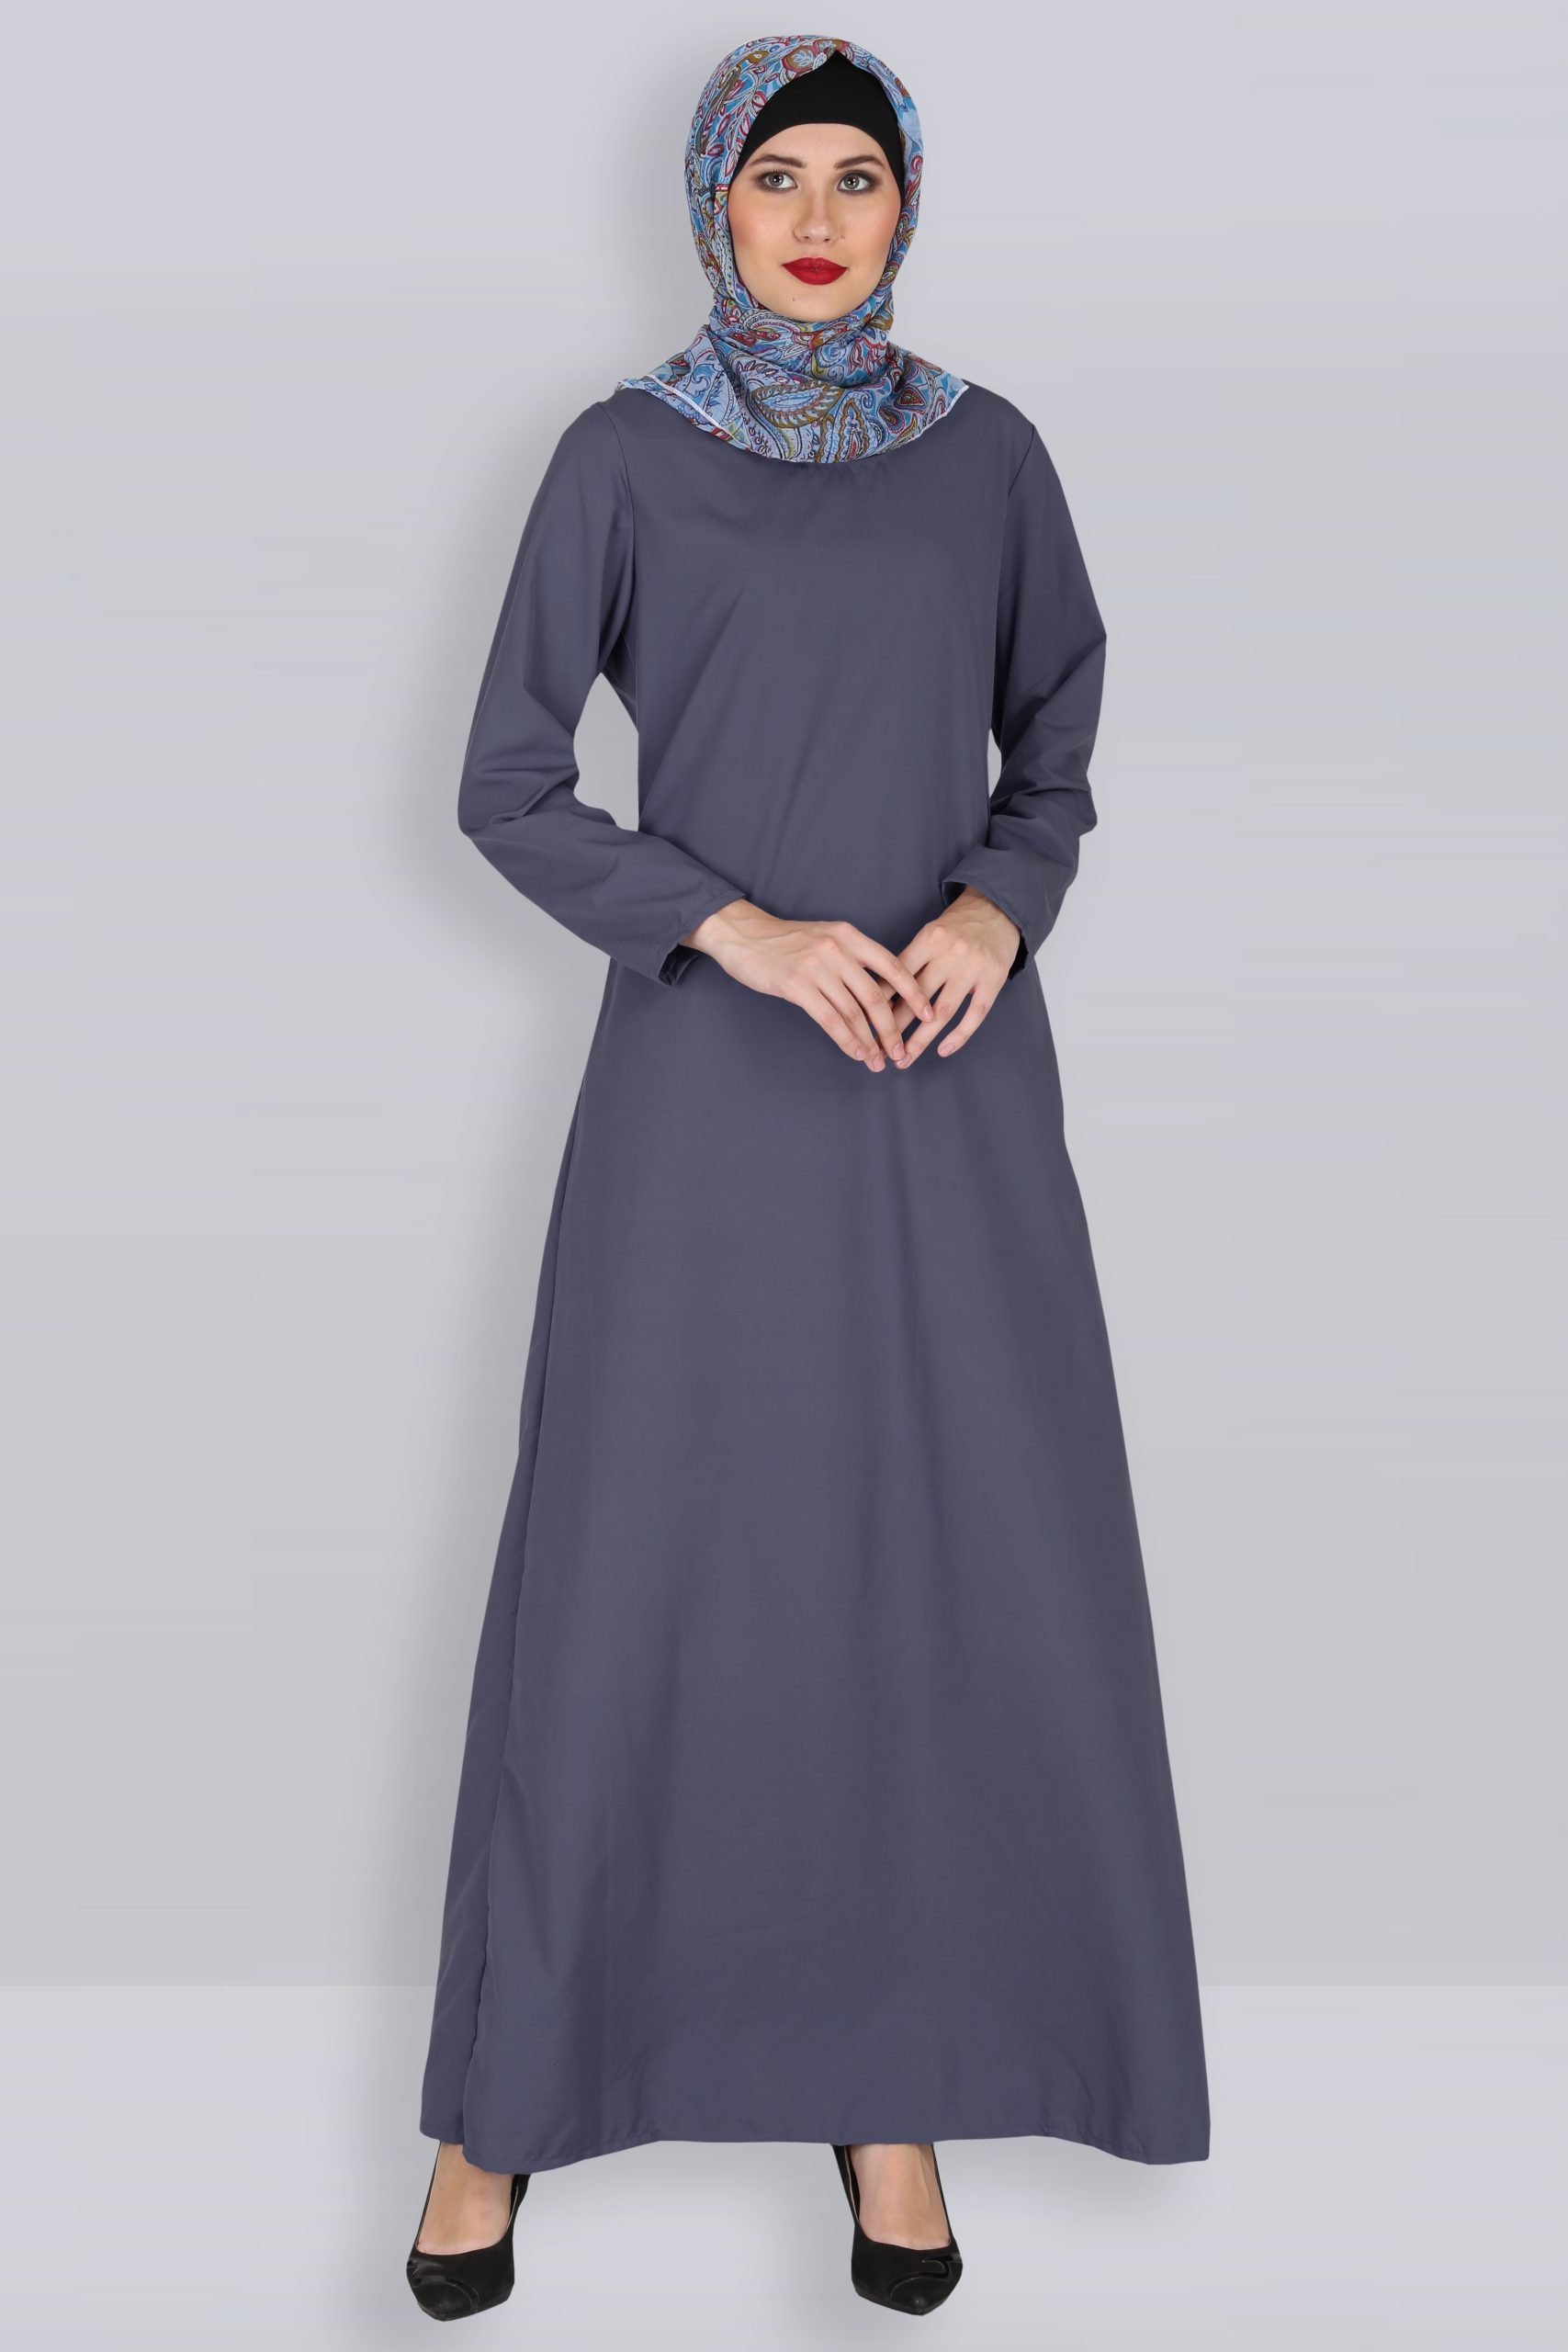 Fatima Porpoise Grey Cotton Abaya - Modest Islamic clothing Shopping ...